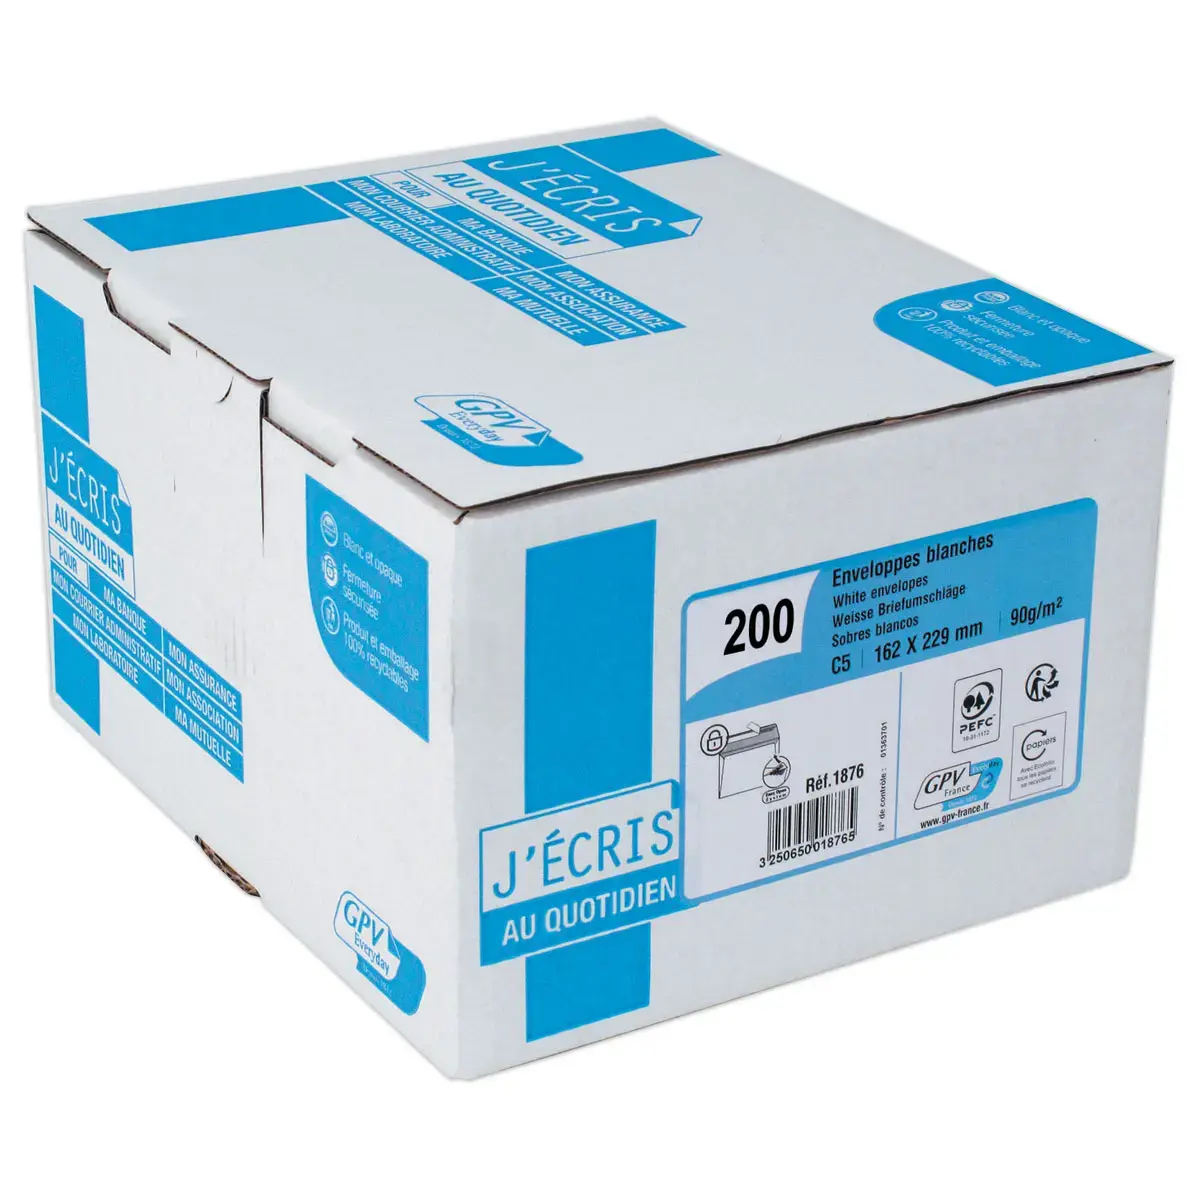 Boite de 200 Enveloppes extra blanches DL 110x220 100 g bande de protection photo du produit